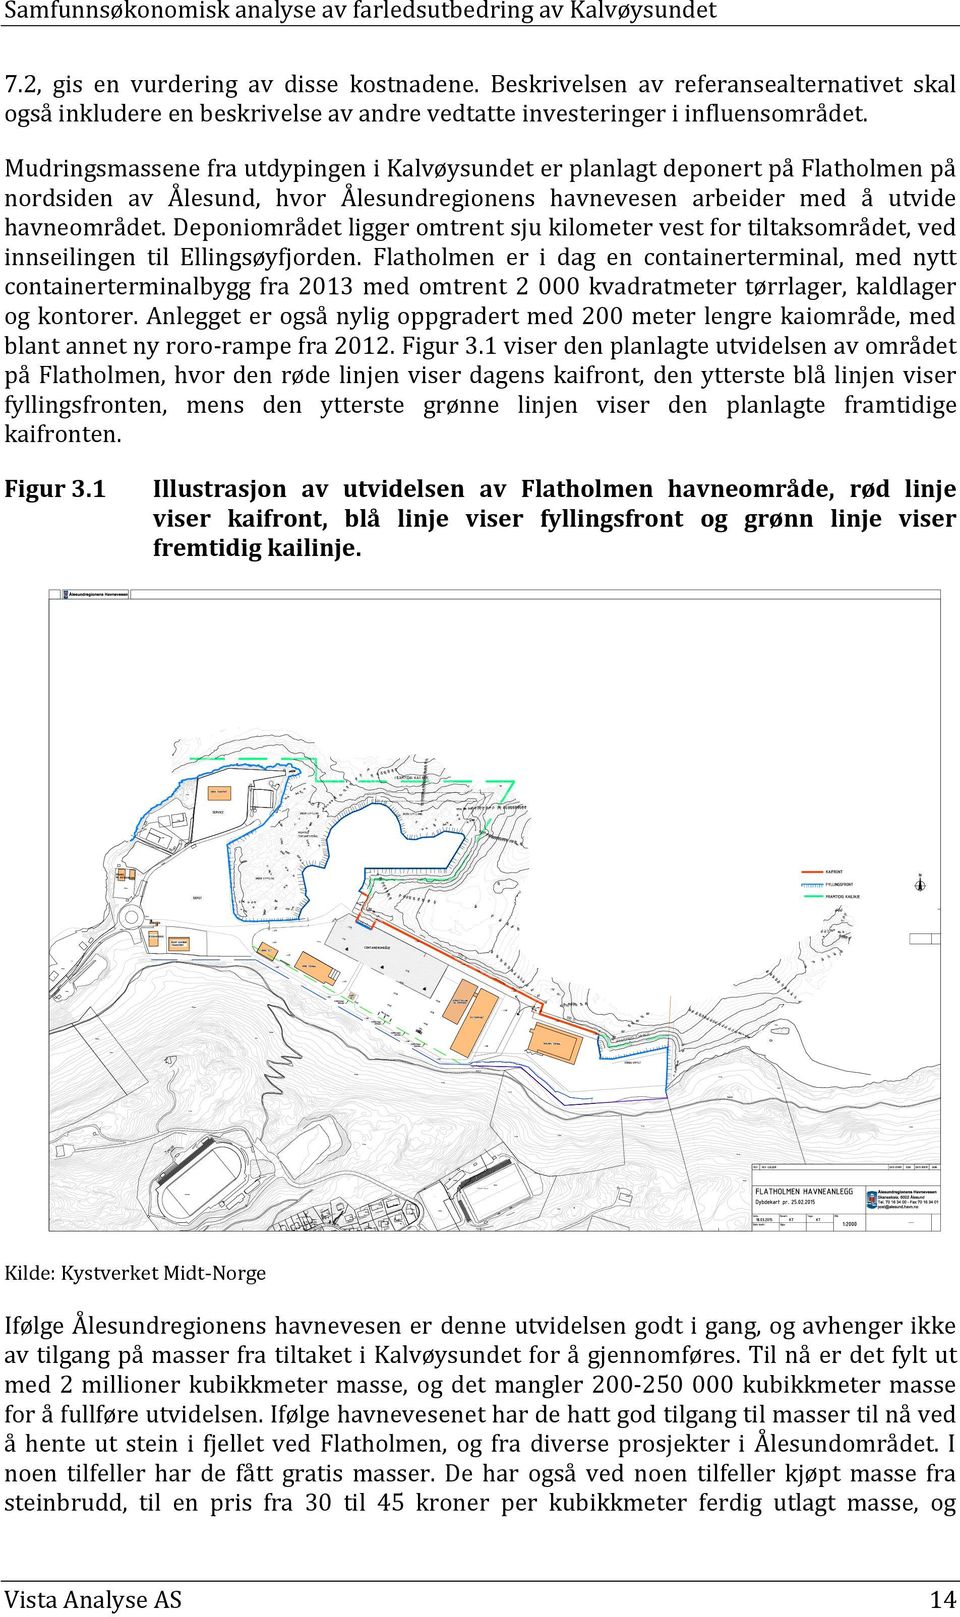 Mudringsmassene fra utdypingen i Kalvøysundet er planlagt deponert på Flatholmen på nordsiden av Ålesund, hvor Ålesundregionens havnevesen arbeider med å utvide havneområdet.